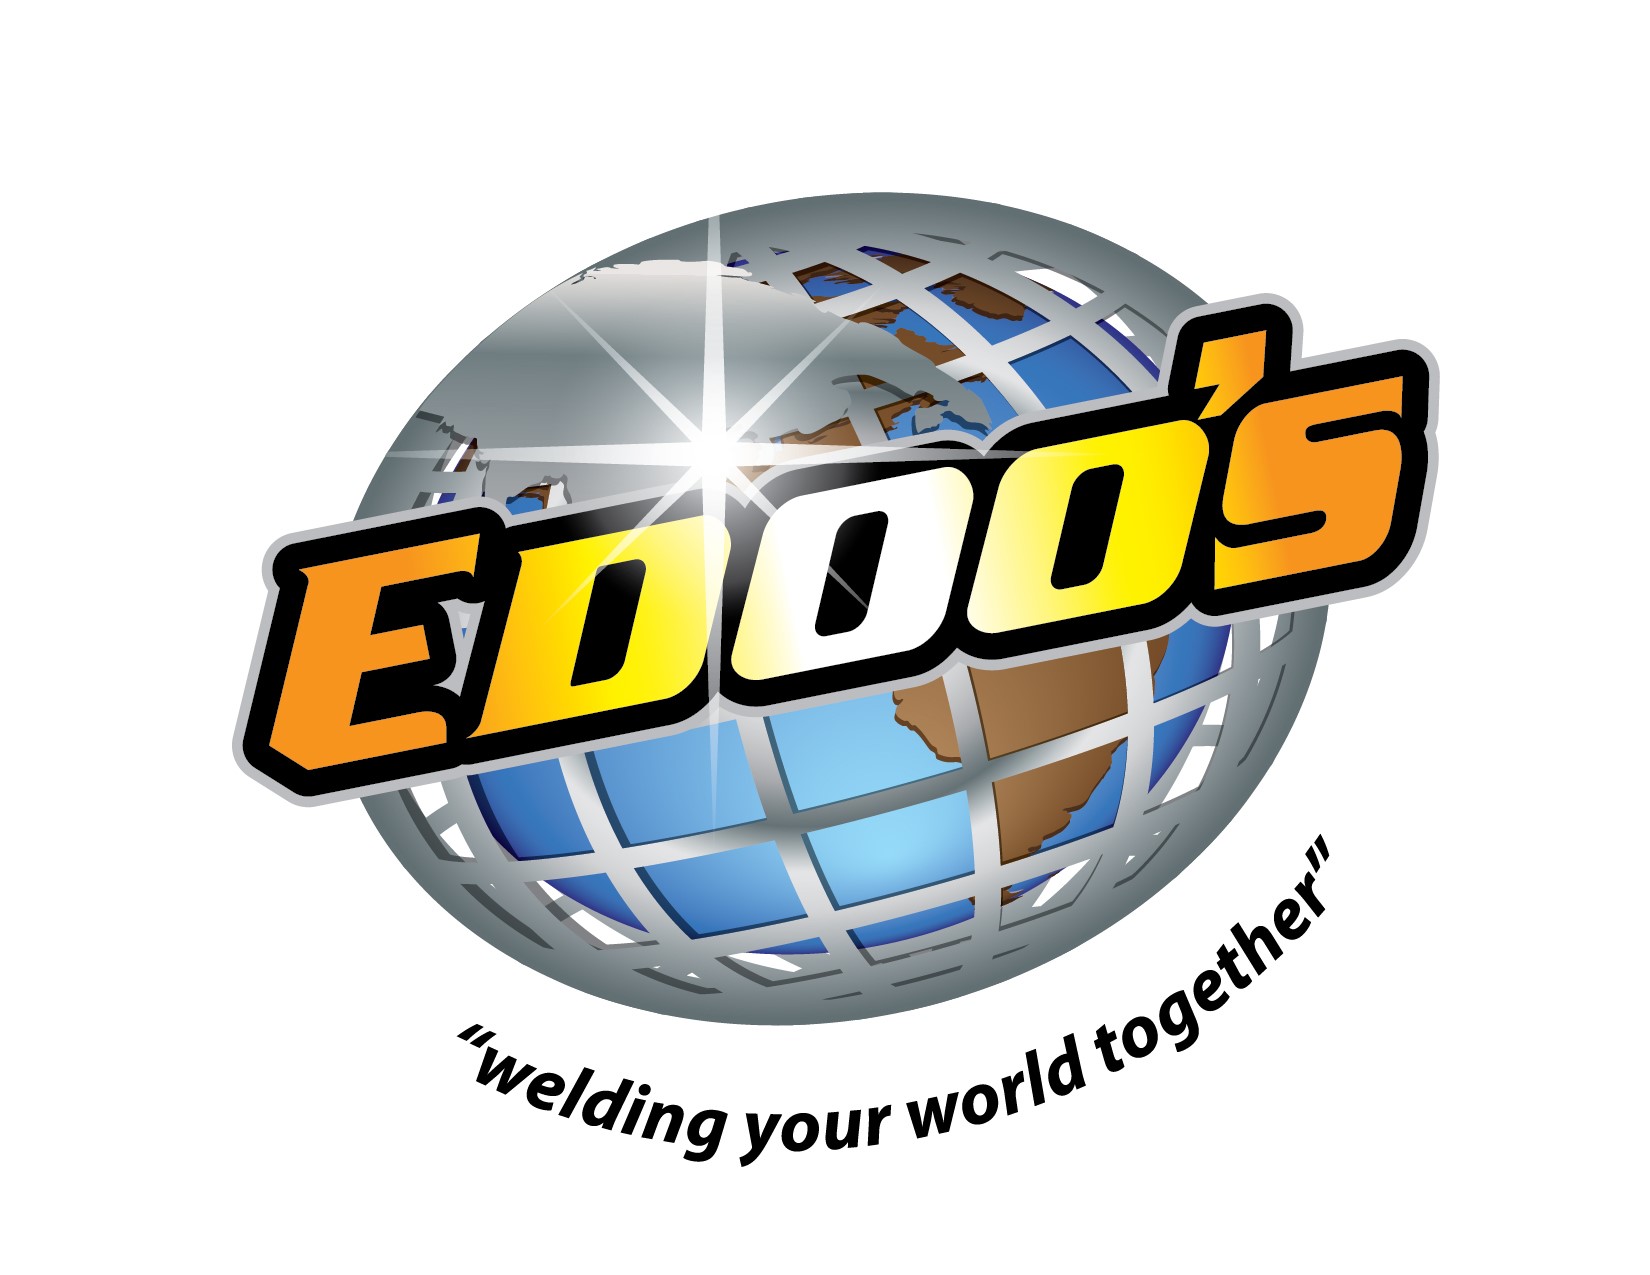 Edoos Welding & Industrial Supplies Co. Ltd